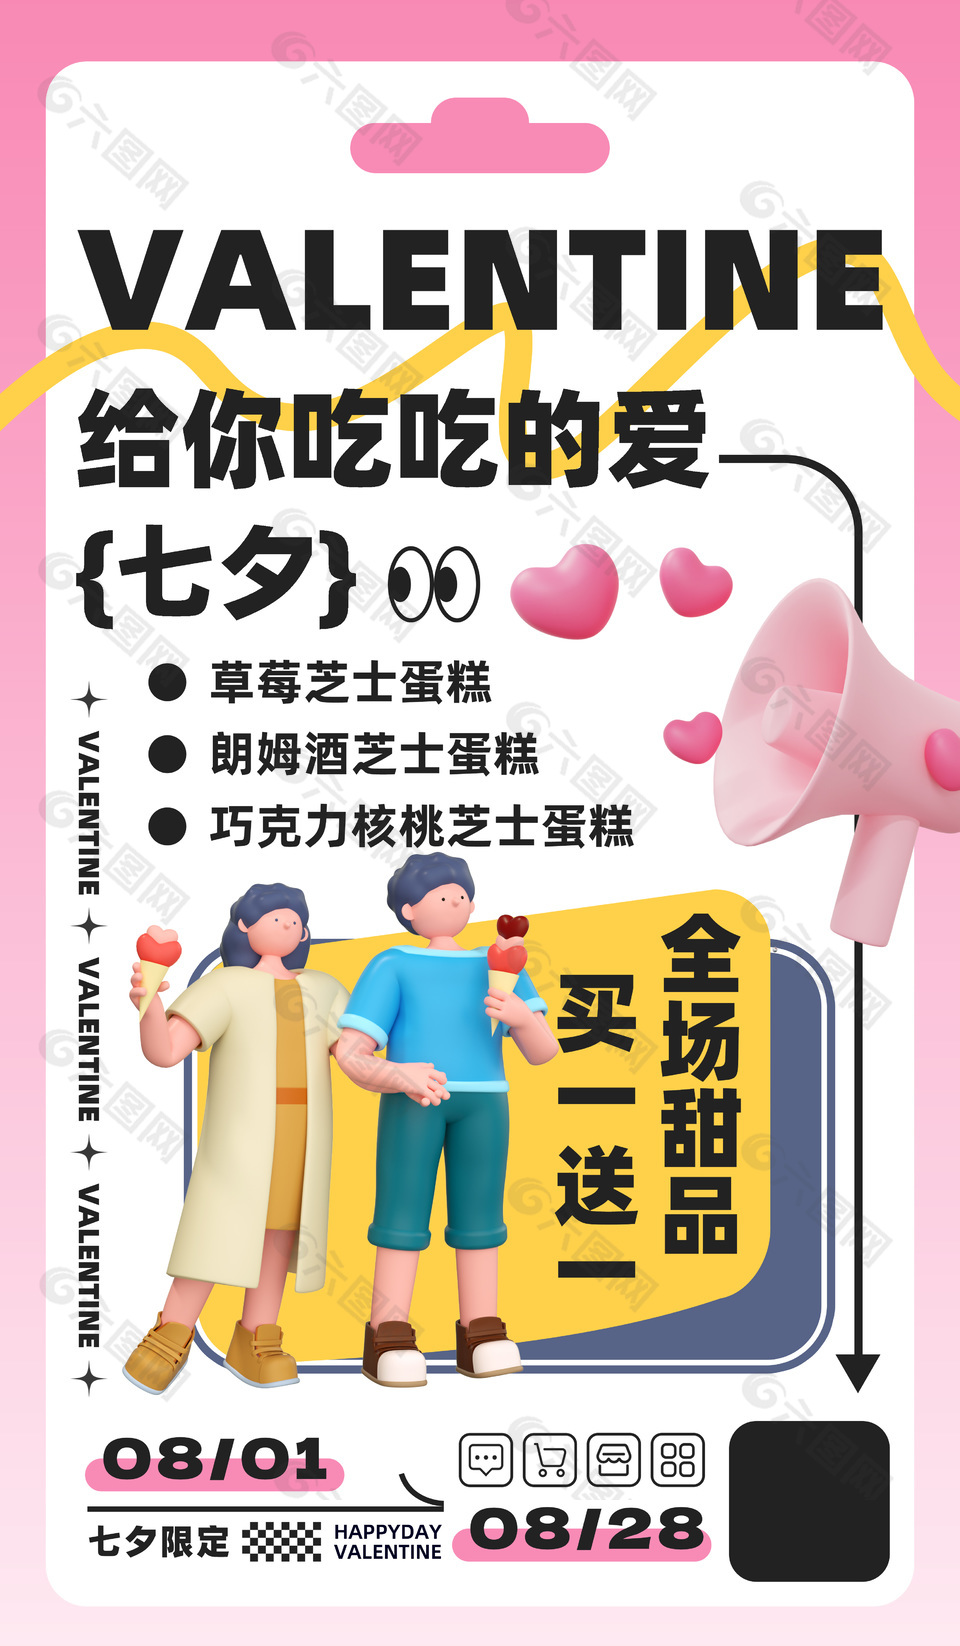 七夕限定甜品店促销活动宣传海报素材大全